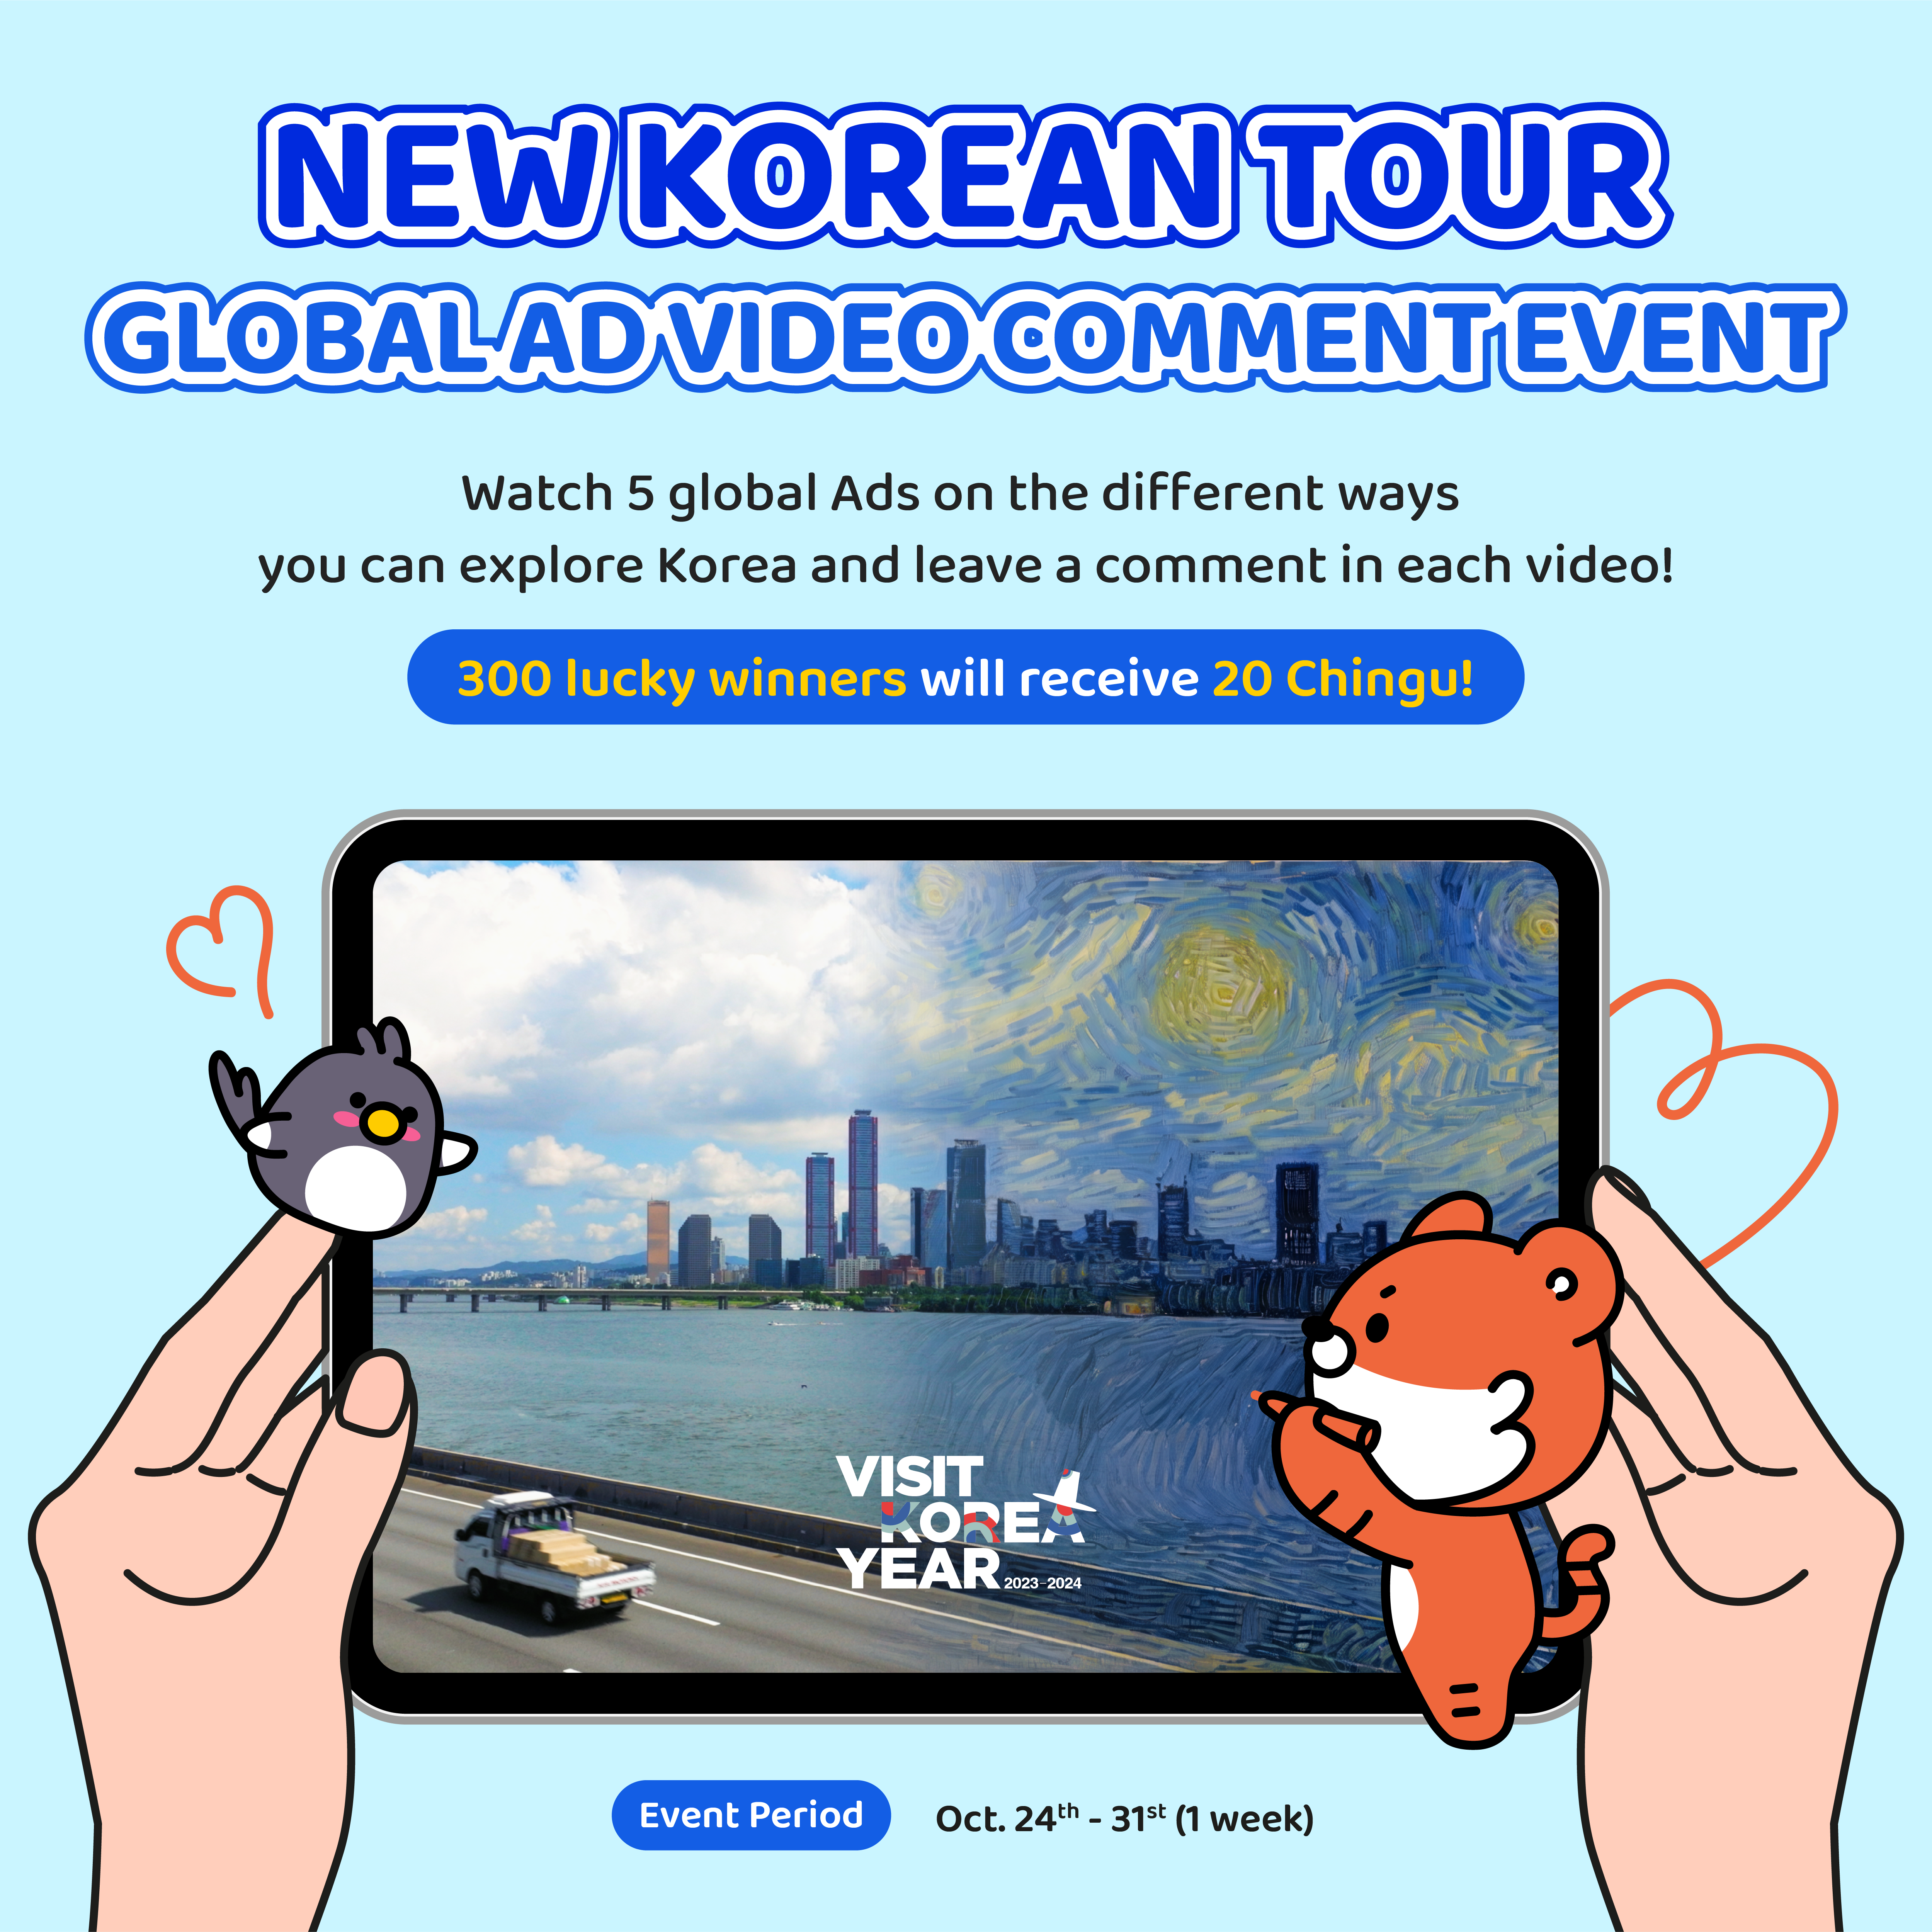 korea tourism ambassador 2022